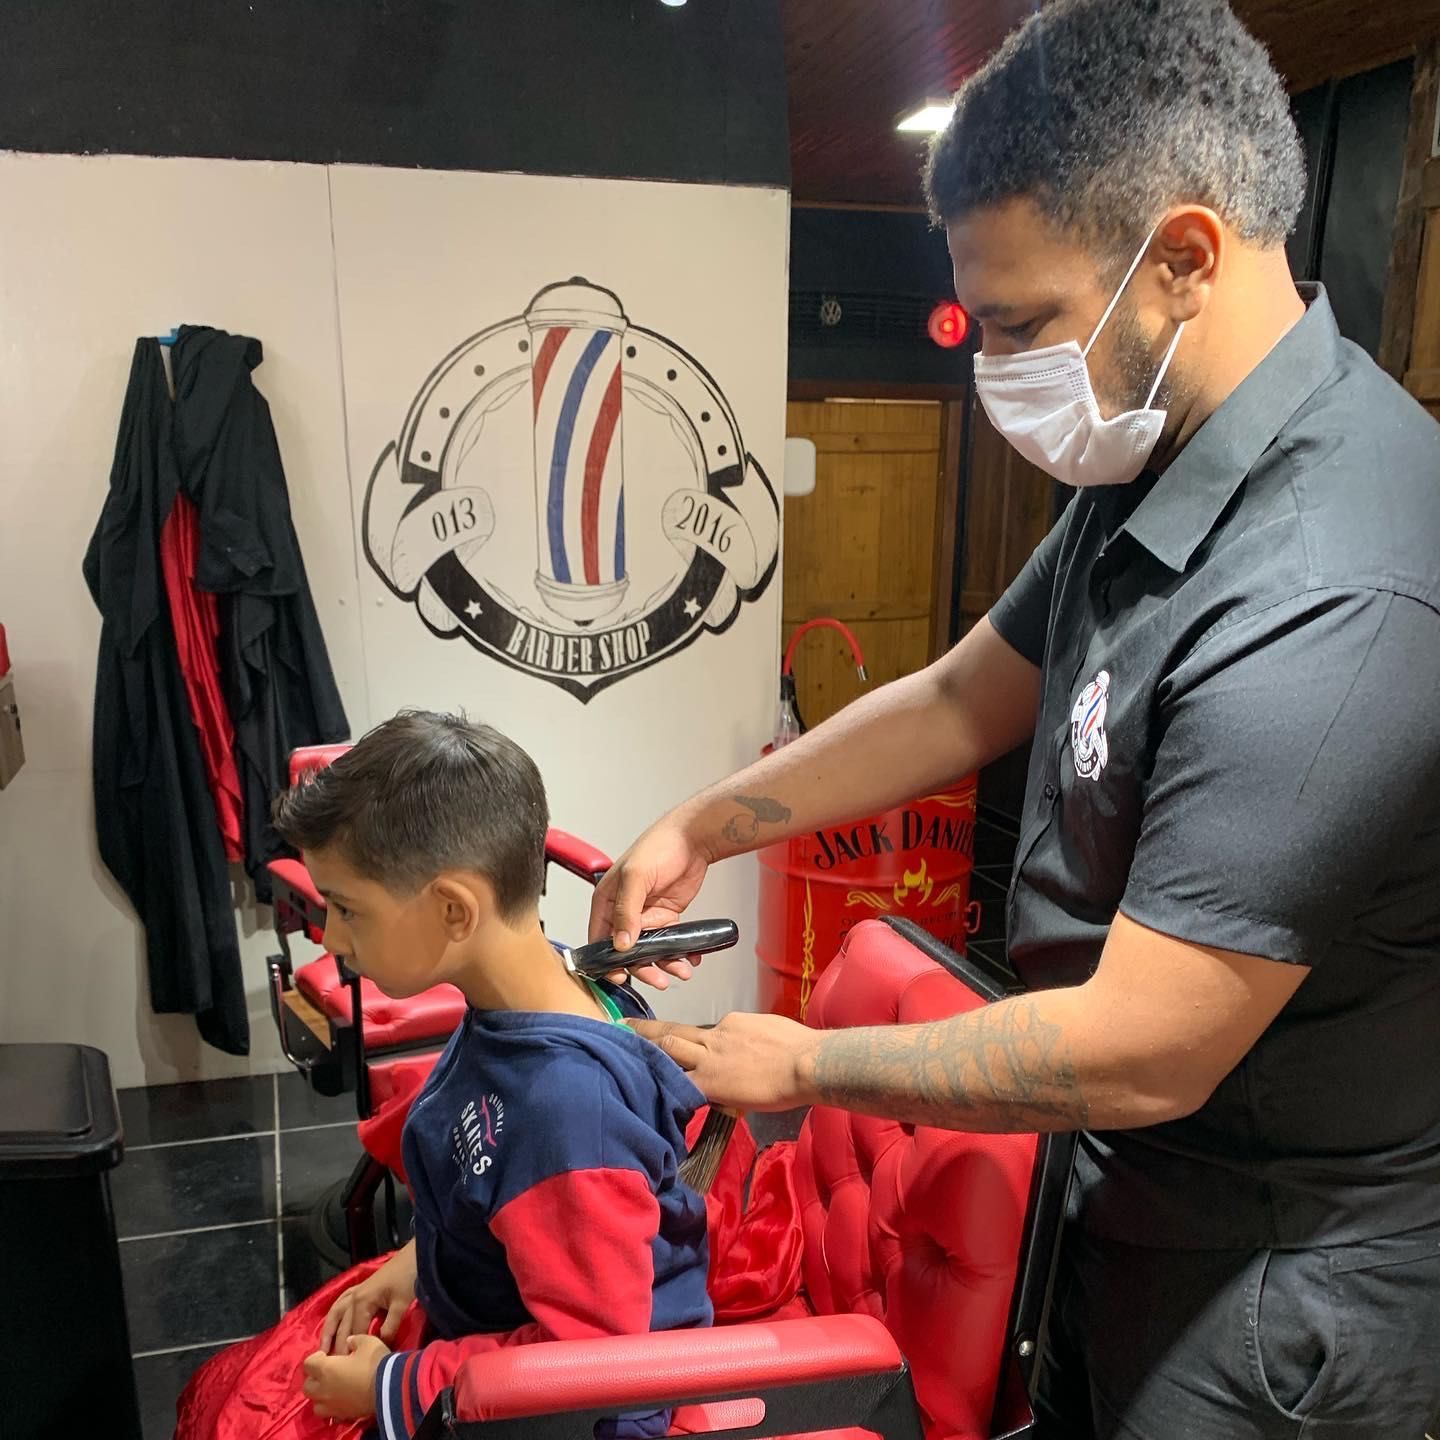 Thiago Amaro - 013 Barber Shop